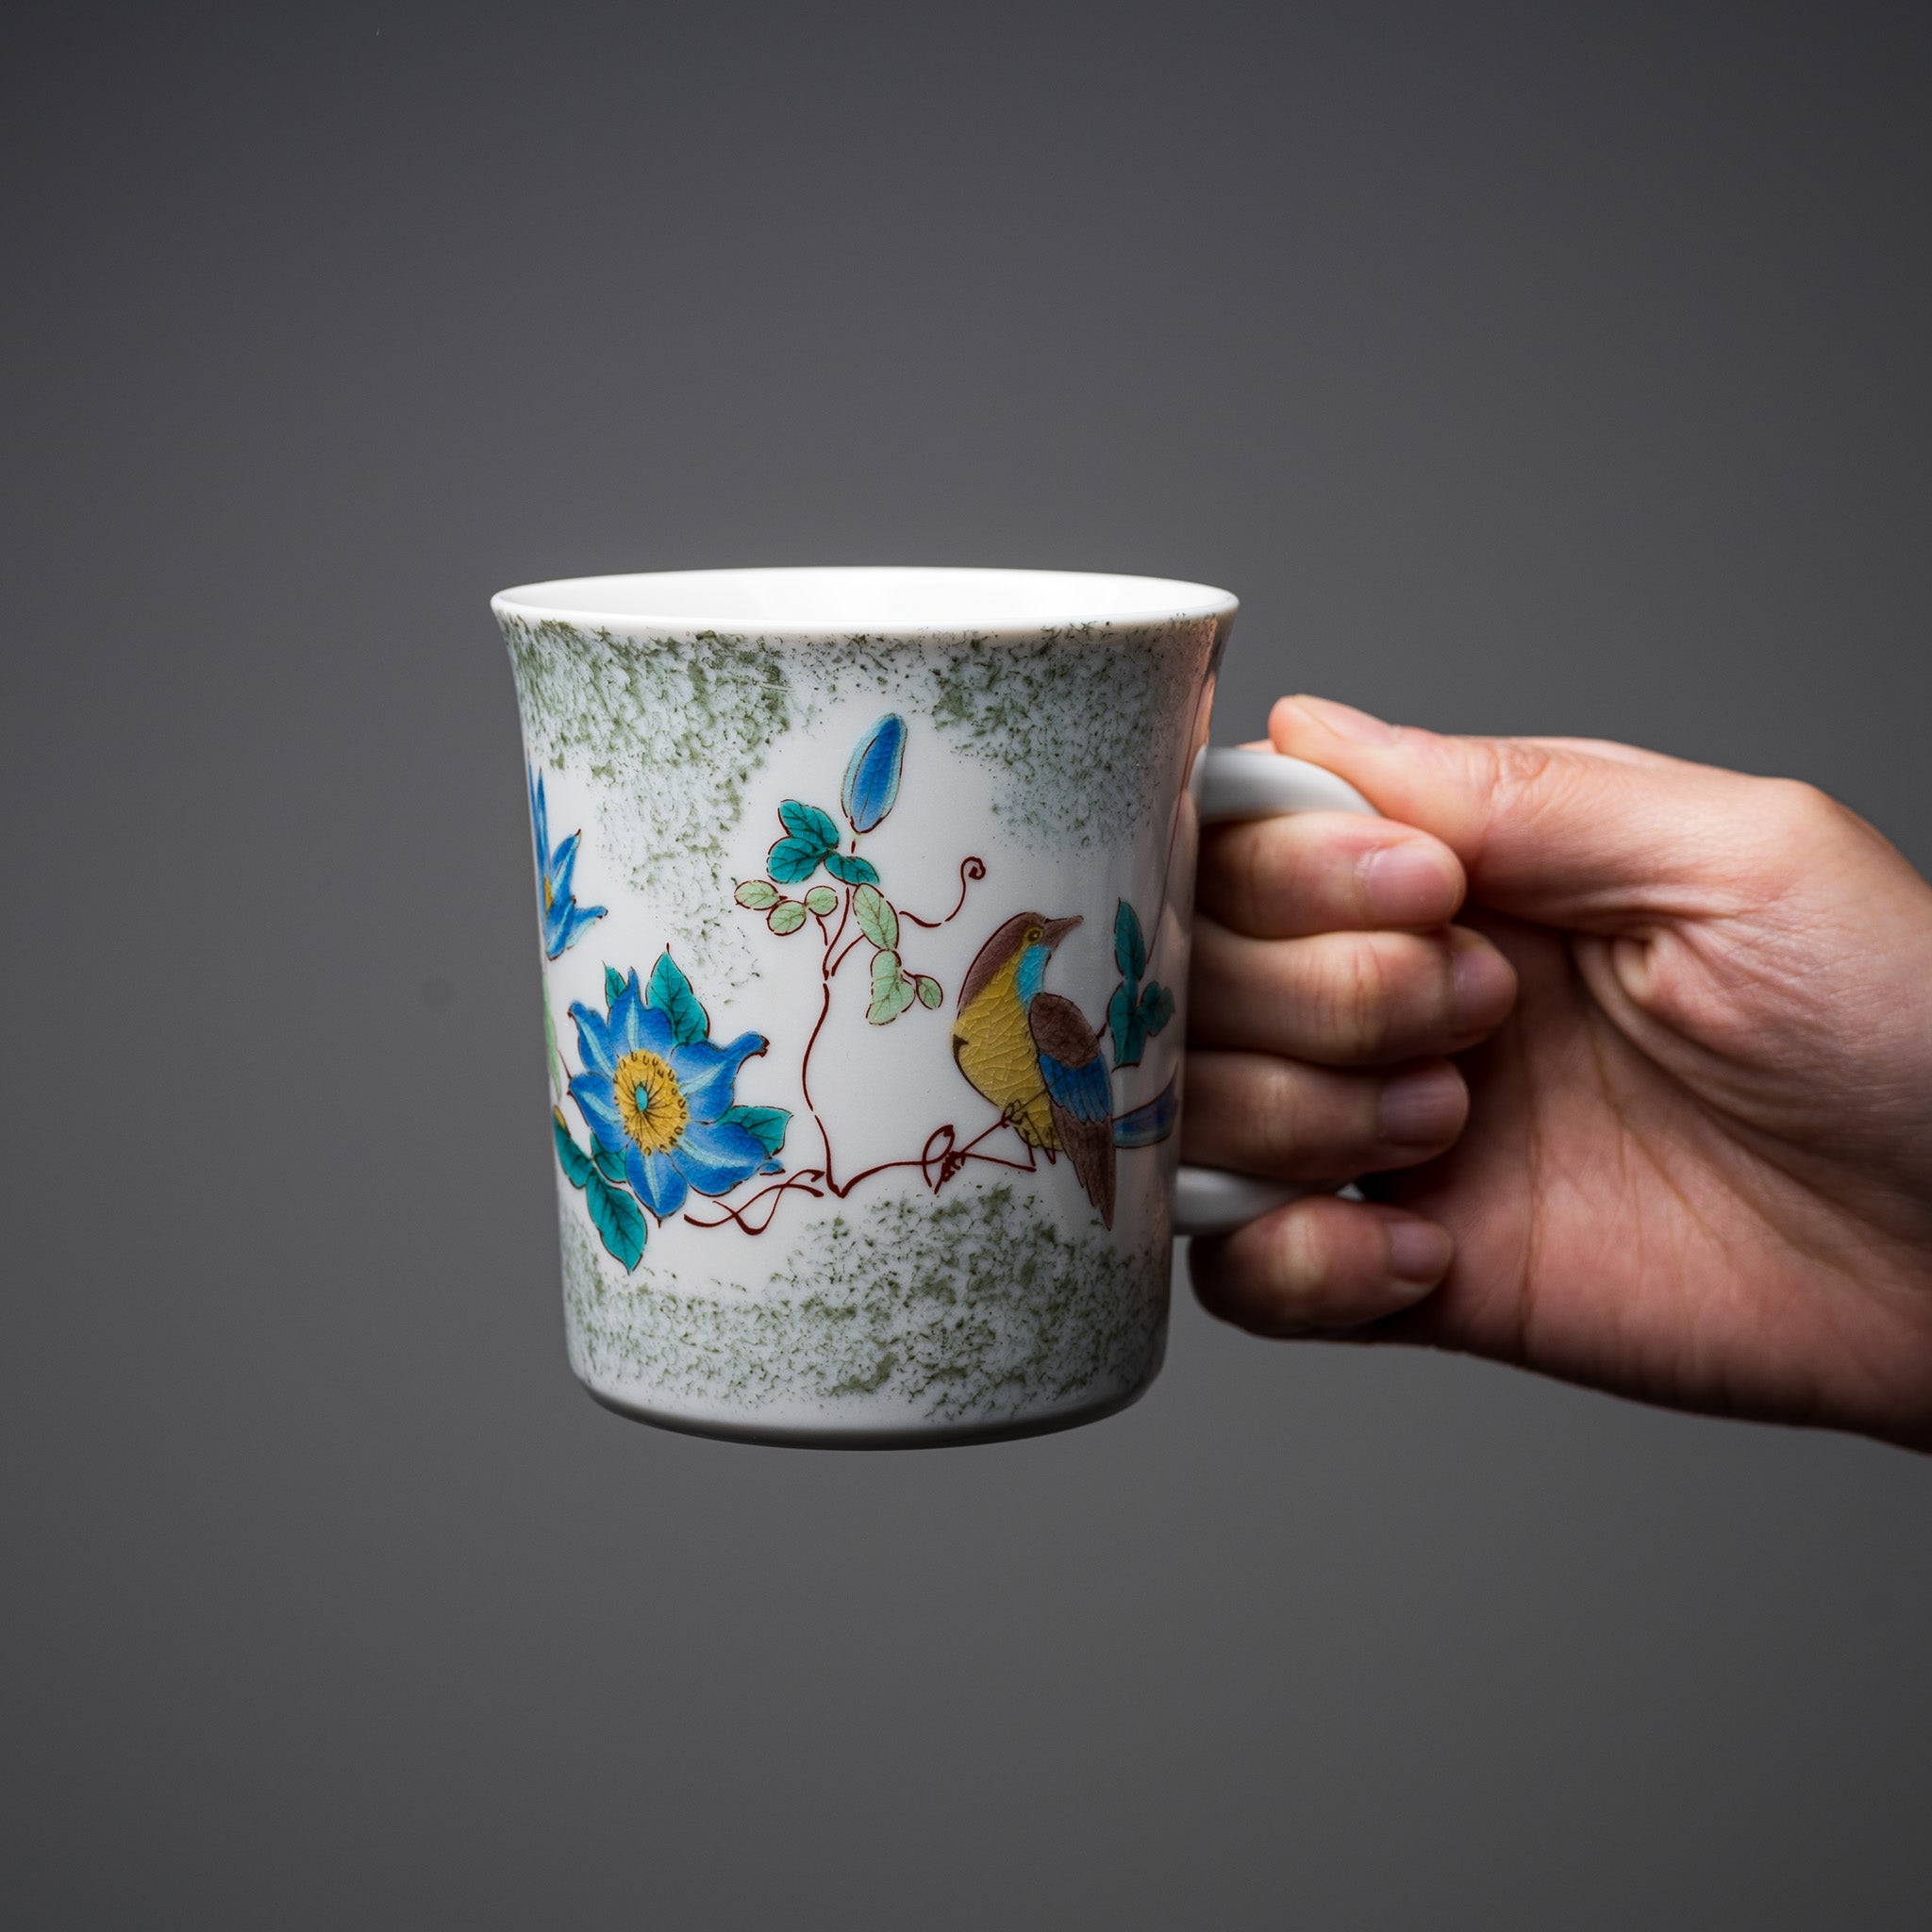 Kutani ware Pair Mug Cup - Wonderland / 九谷焼 ペアマグカップ